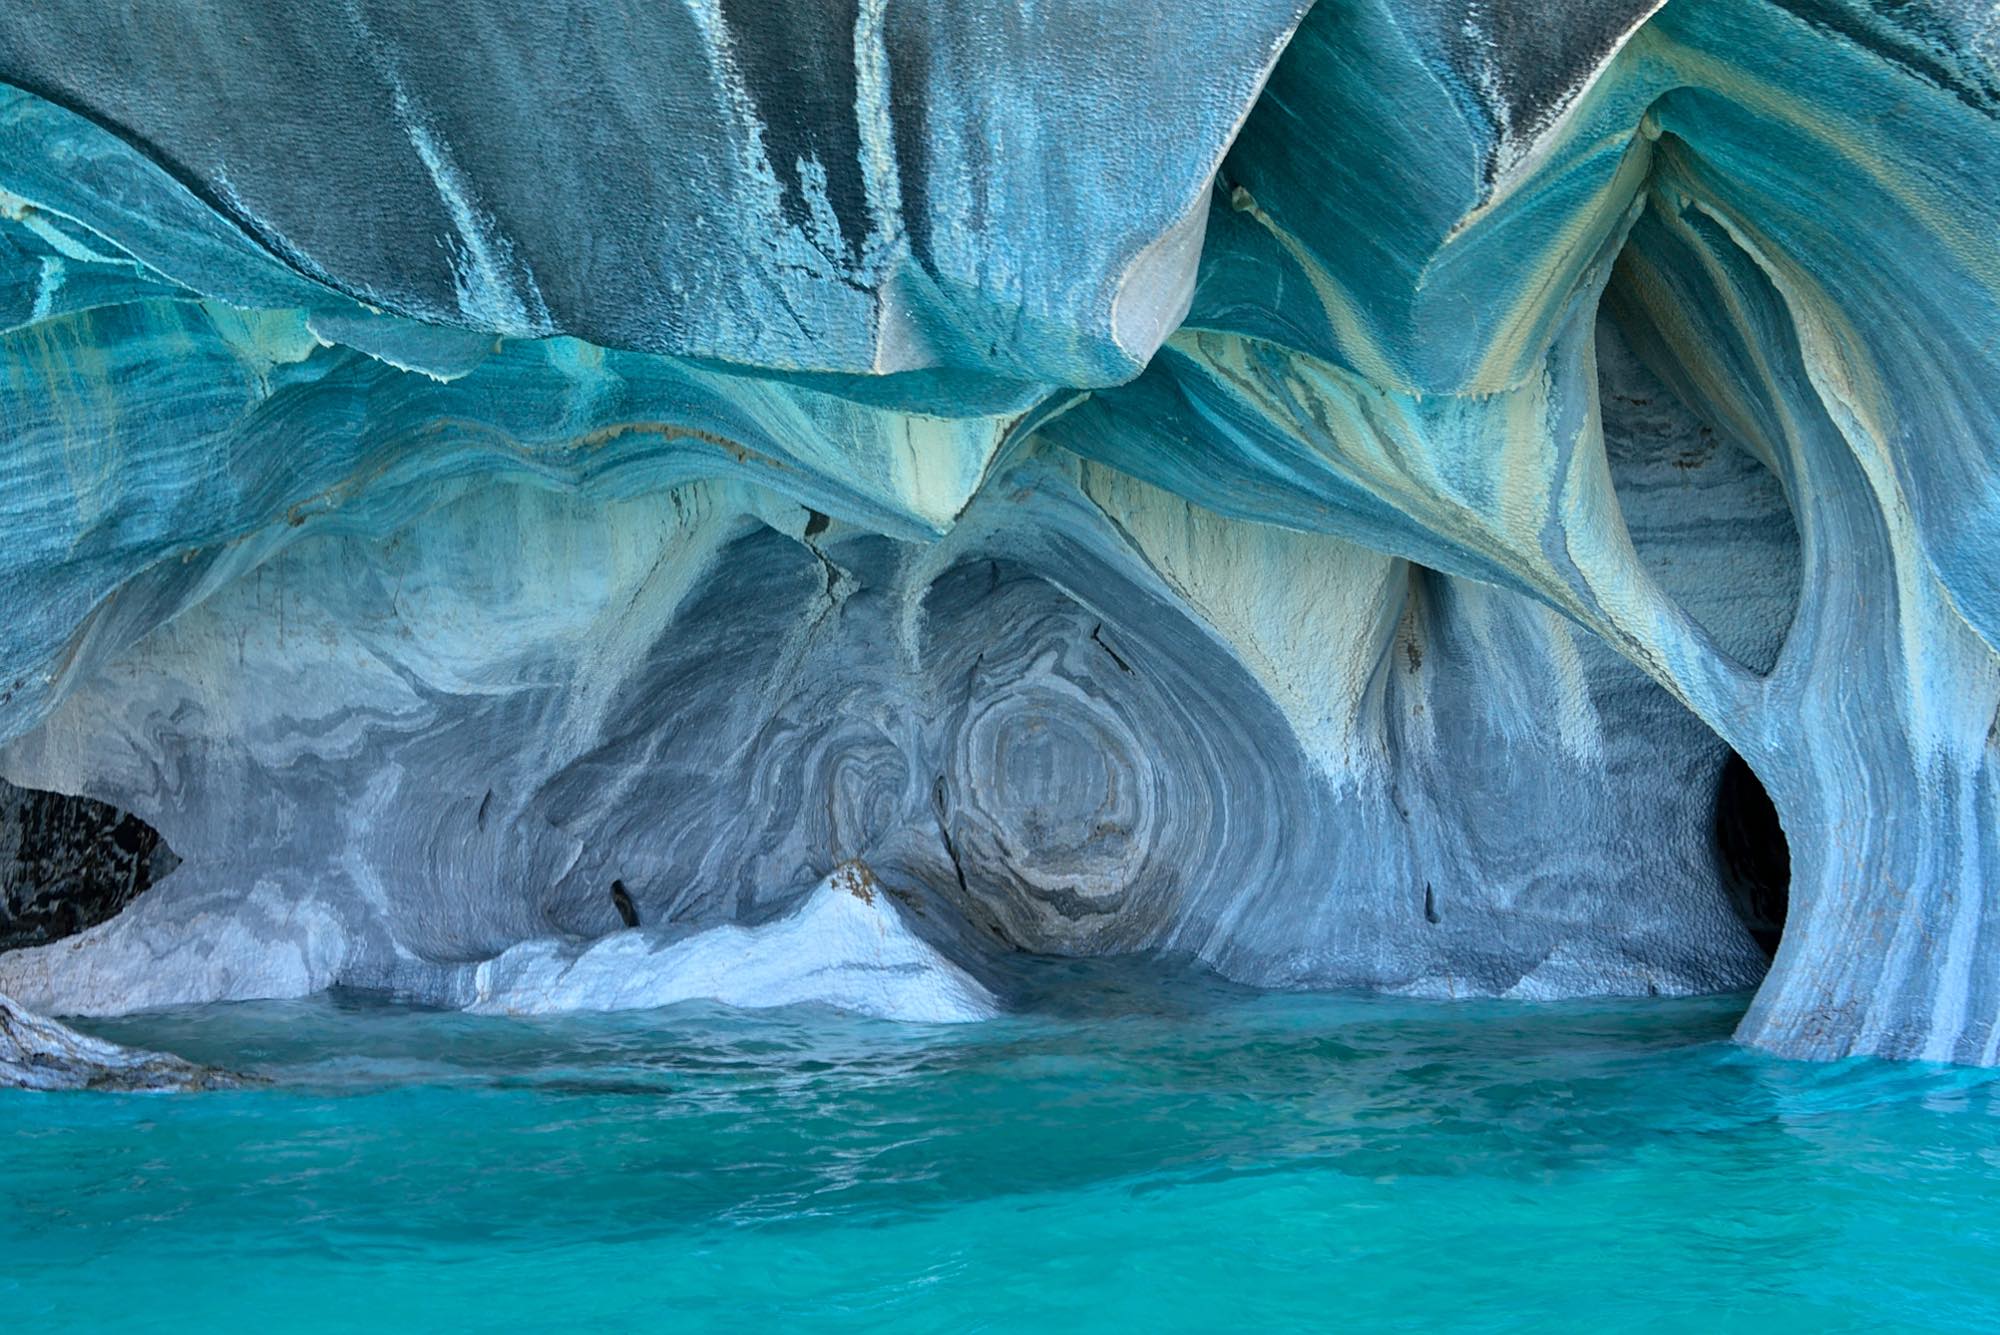  マーブルカテドラル。幻想的な形をした洞窟に、湖水の青が反射し青く輝く世界を作り出しています。